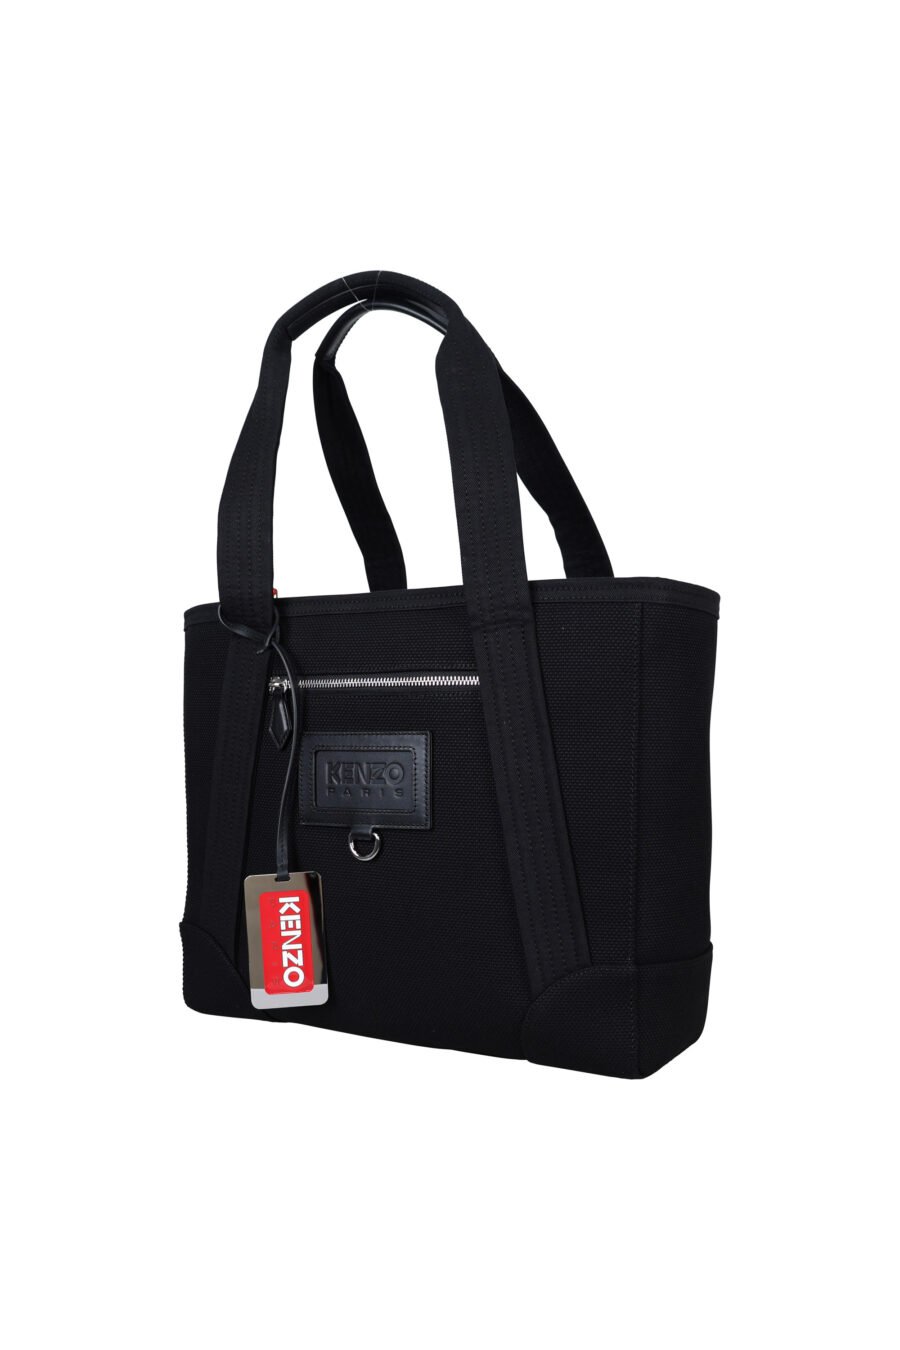 Tote bag with minilogo "kenzo paris" - 3612230546899 1